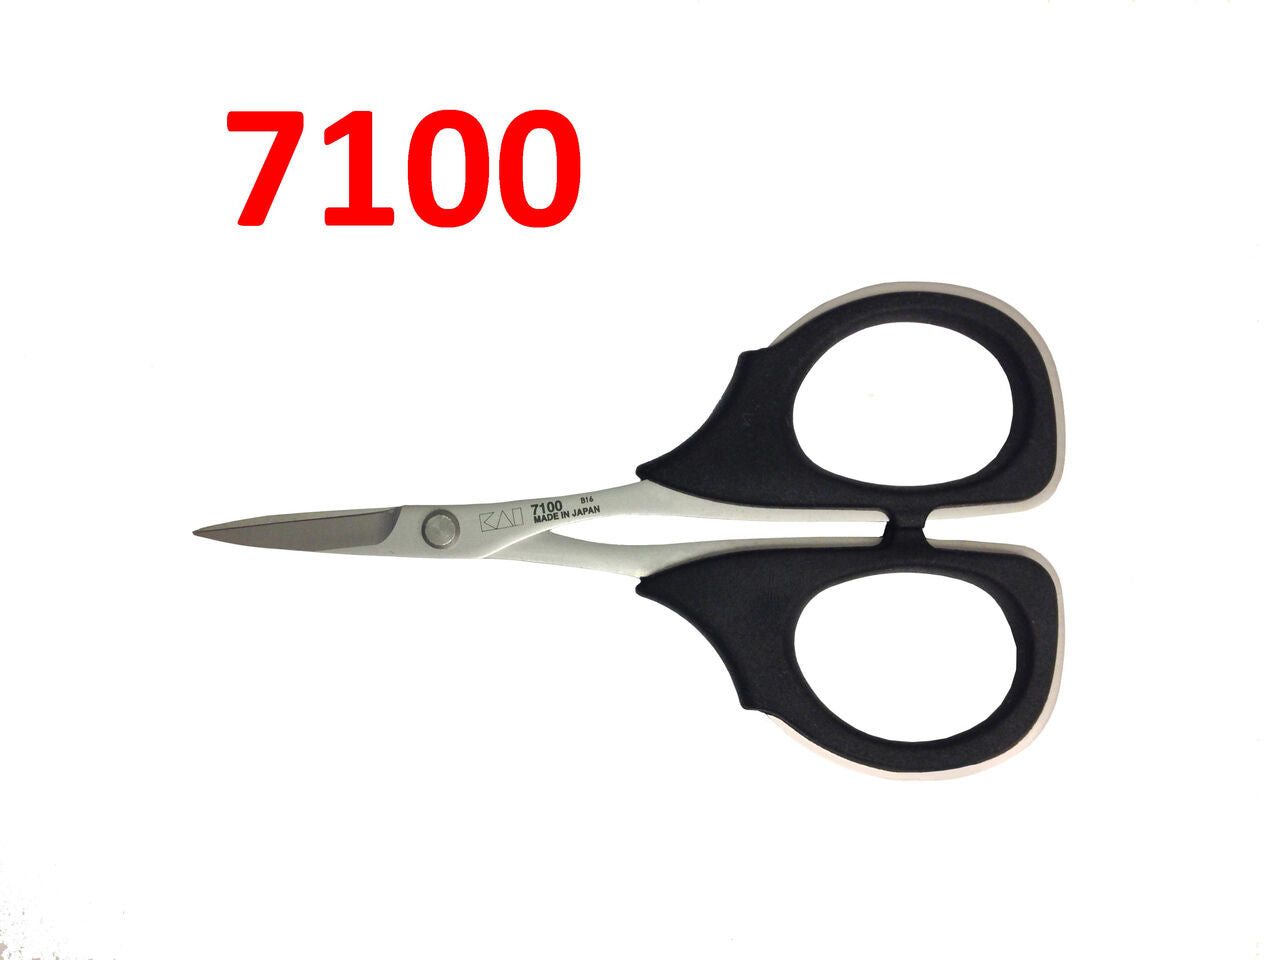 Kai 7100: 4 1/4 Inch Professional Scissors